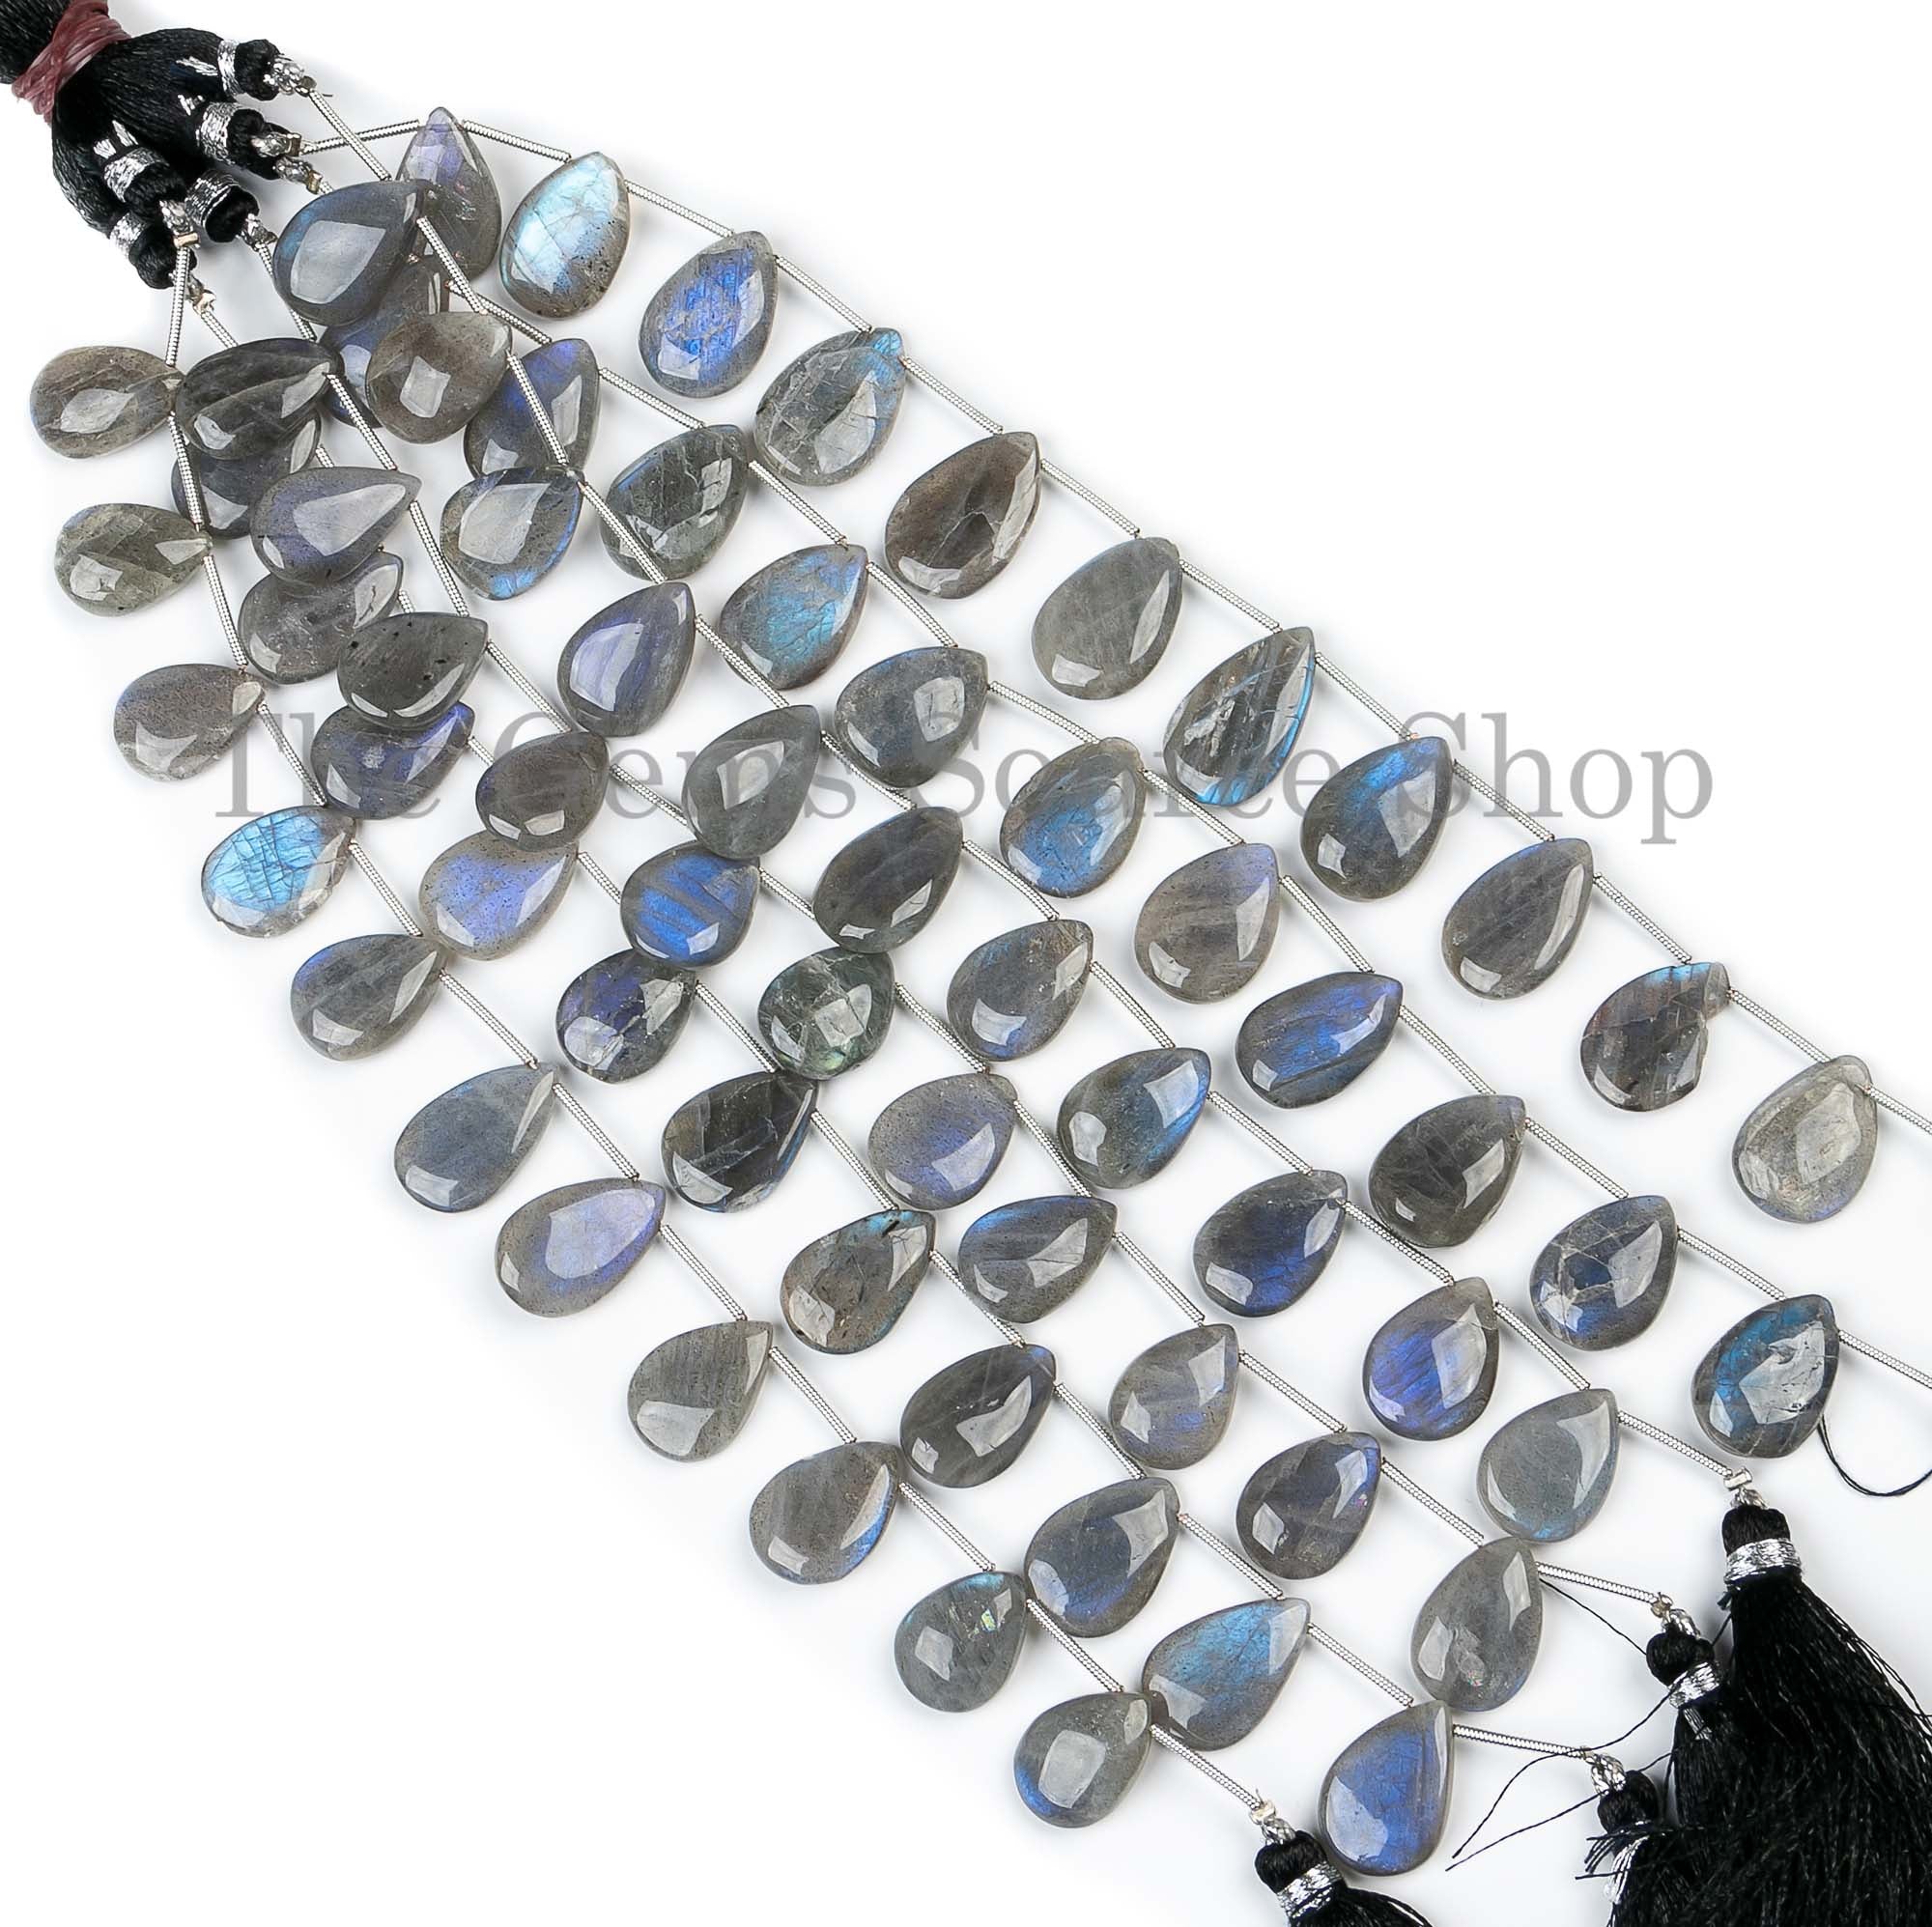 Natural Labradorite Beads, Labradorite Smooth Pear Shape Beads, Plain Labradorite Beads